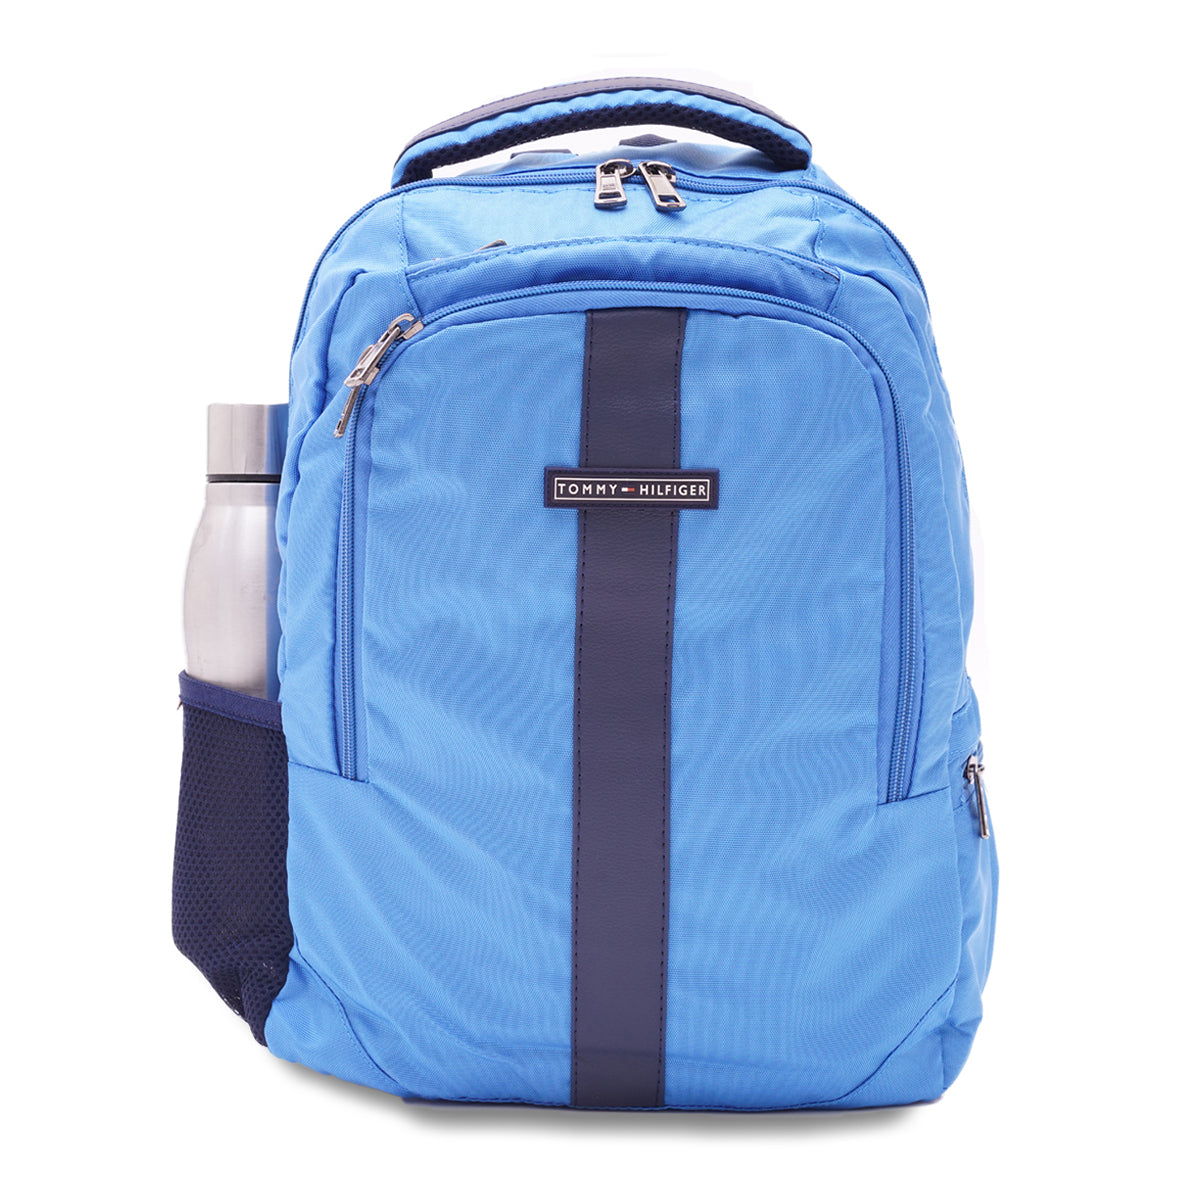 Tommy Hilfiger Derek Laptop Backpack Light Blue 15 Inch